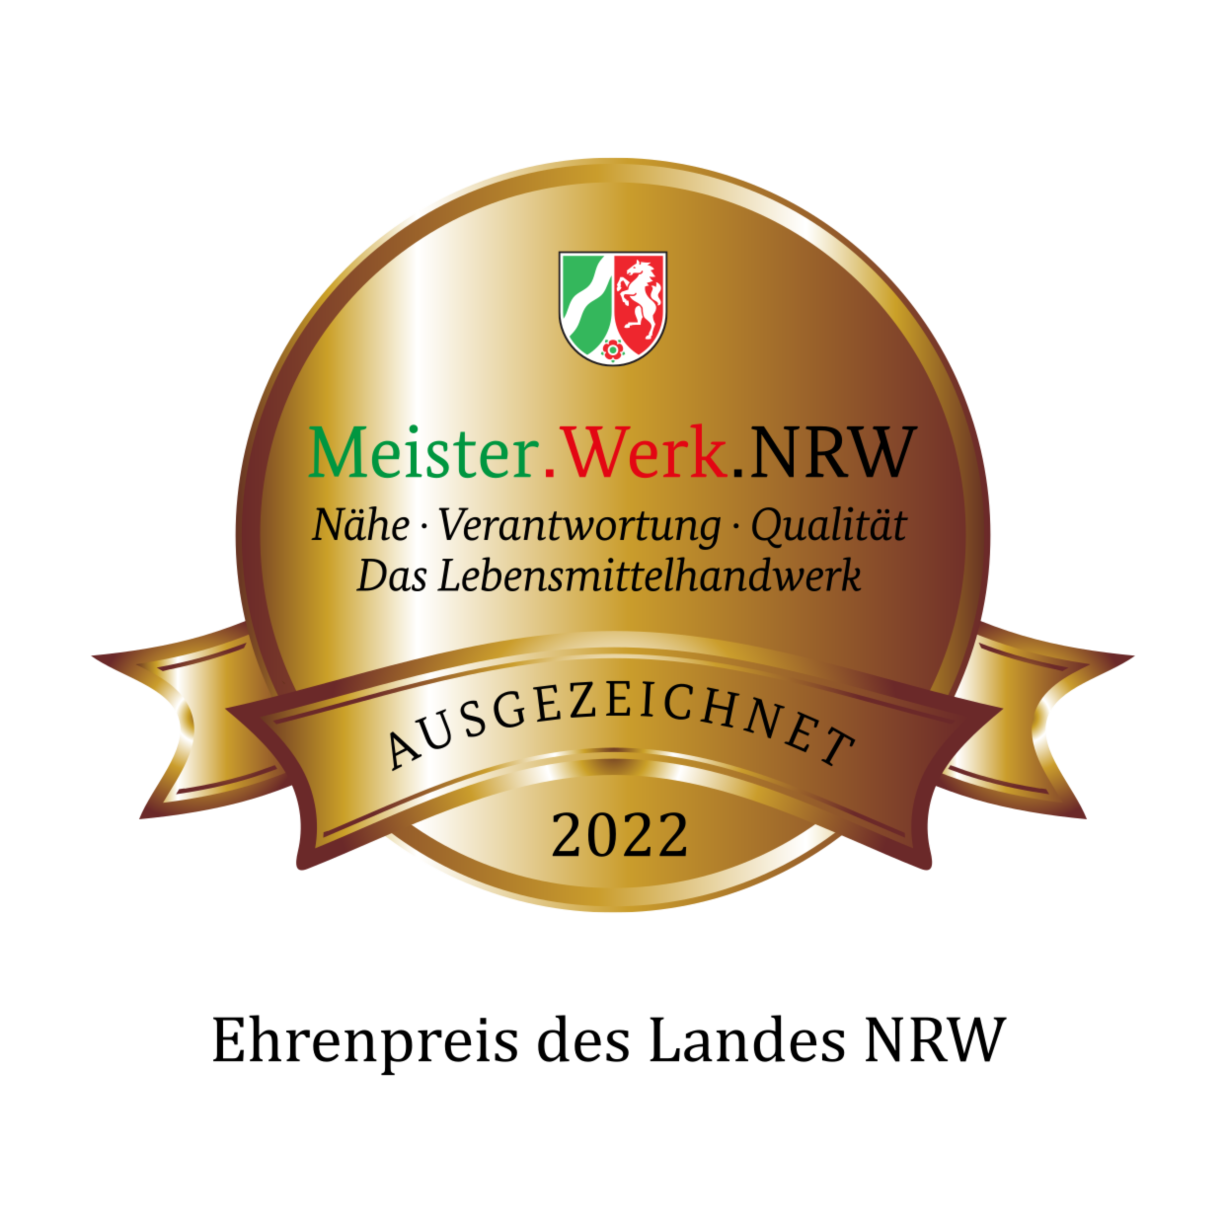 Lebensmittelhandwerk Auszeichnung Meister.Werk.NRW des Landes NRW